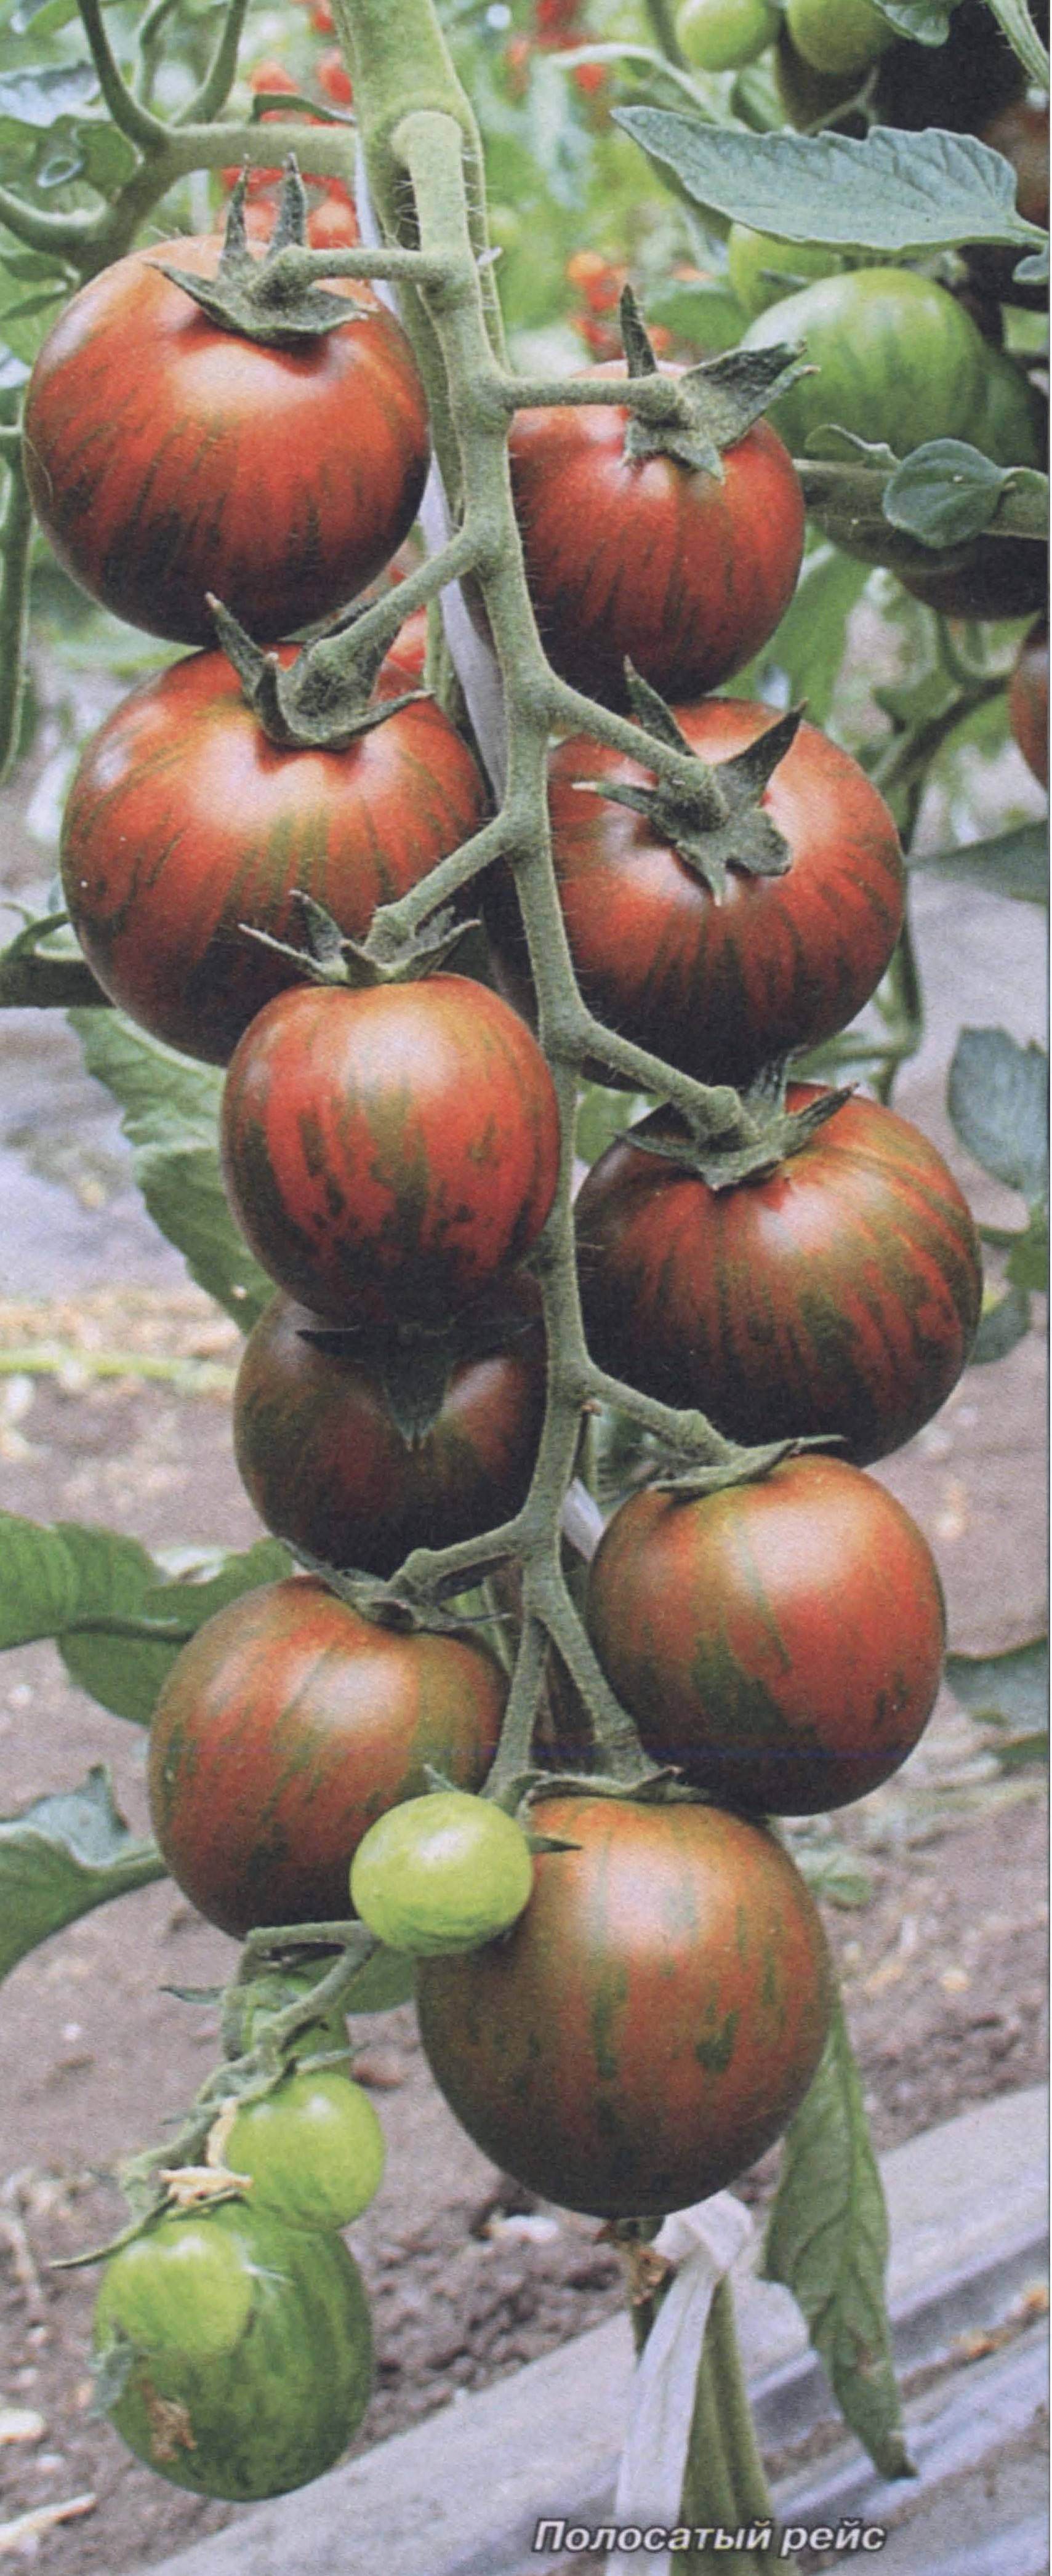 Томат полосатый шоколад: описание оригинального сорта с черными полосками на плодах